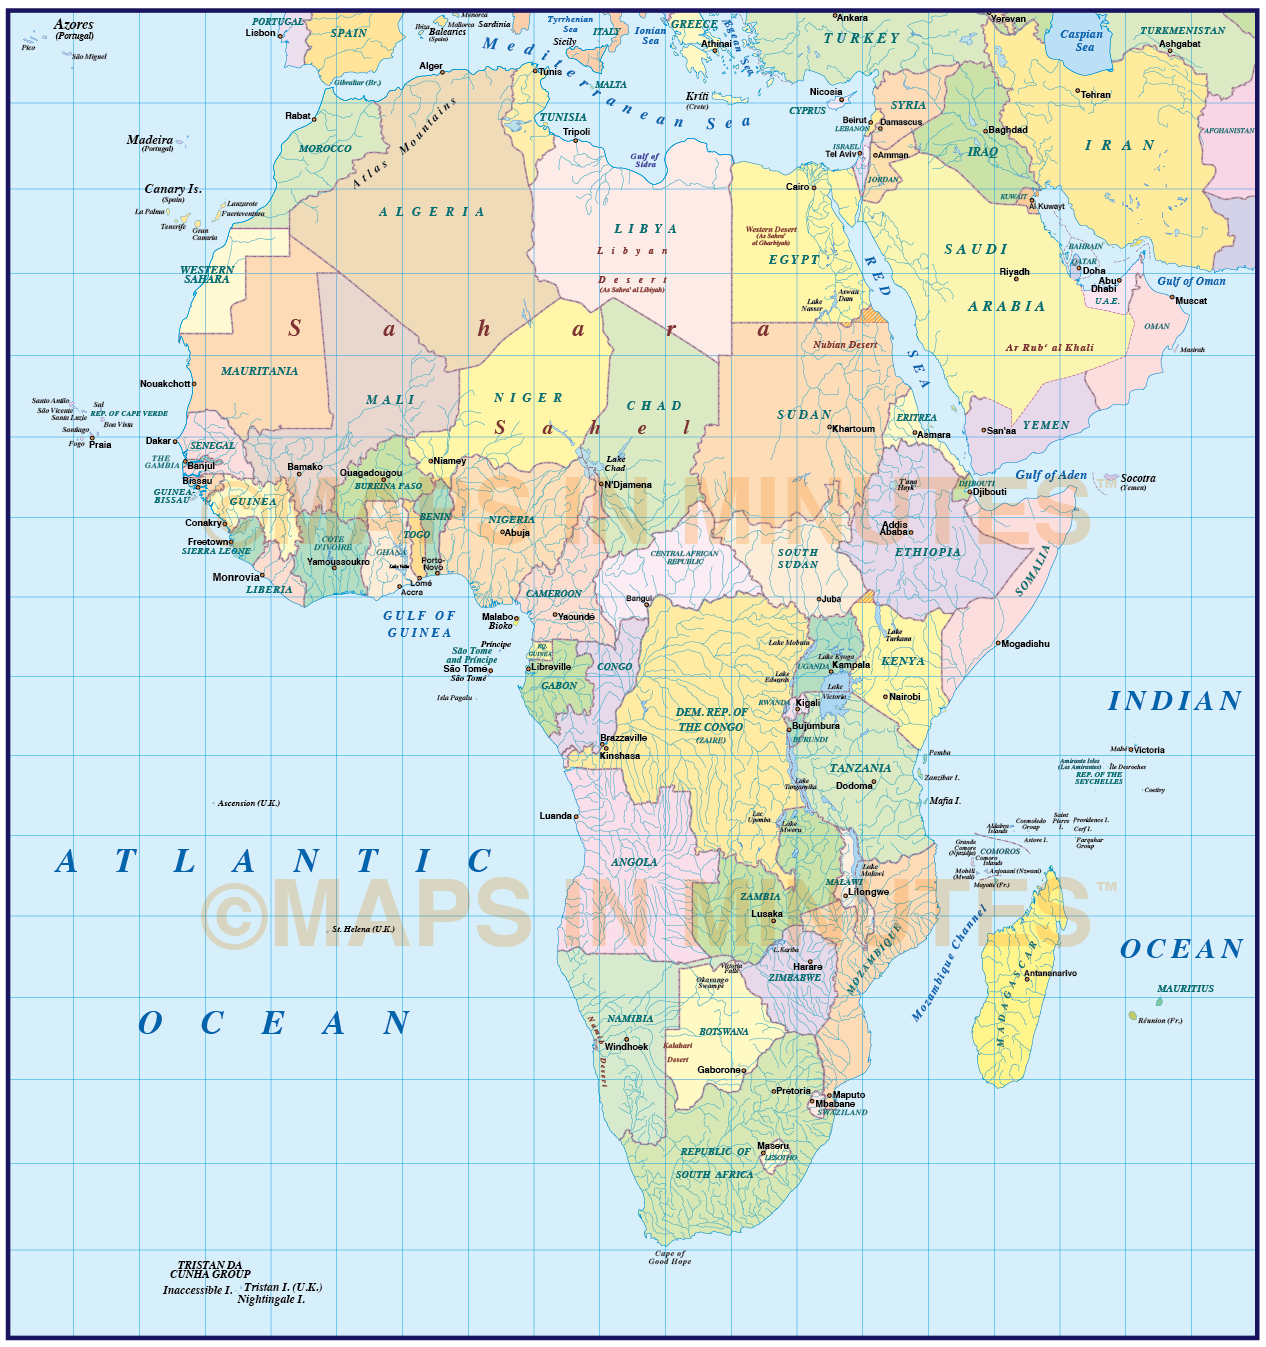 Карта Африки с широтой и долготой. Карта Африки с широтами. Карта Африки с параллелями. Политическая карта Африки. Африка по отношению 0 и 180 долготы